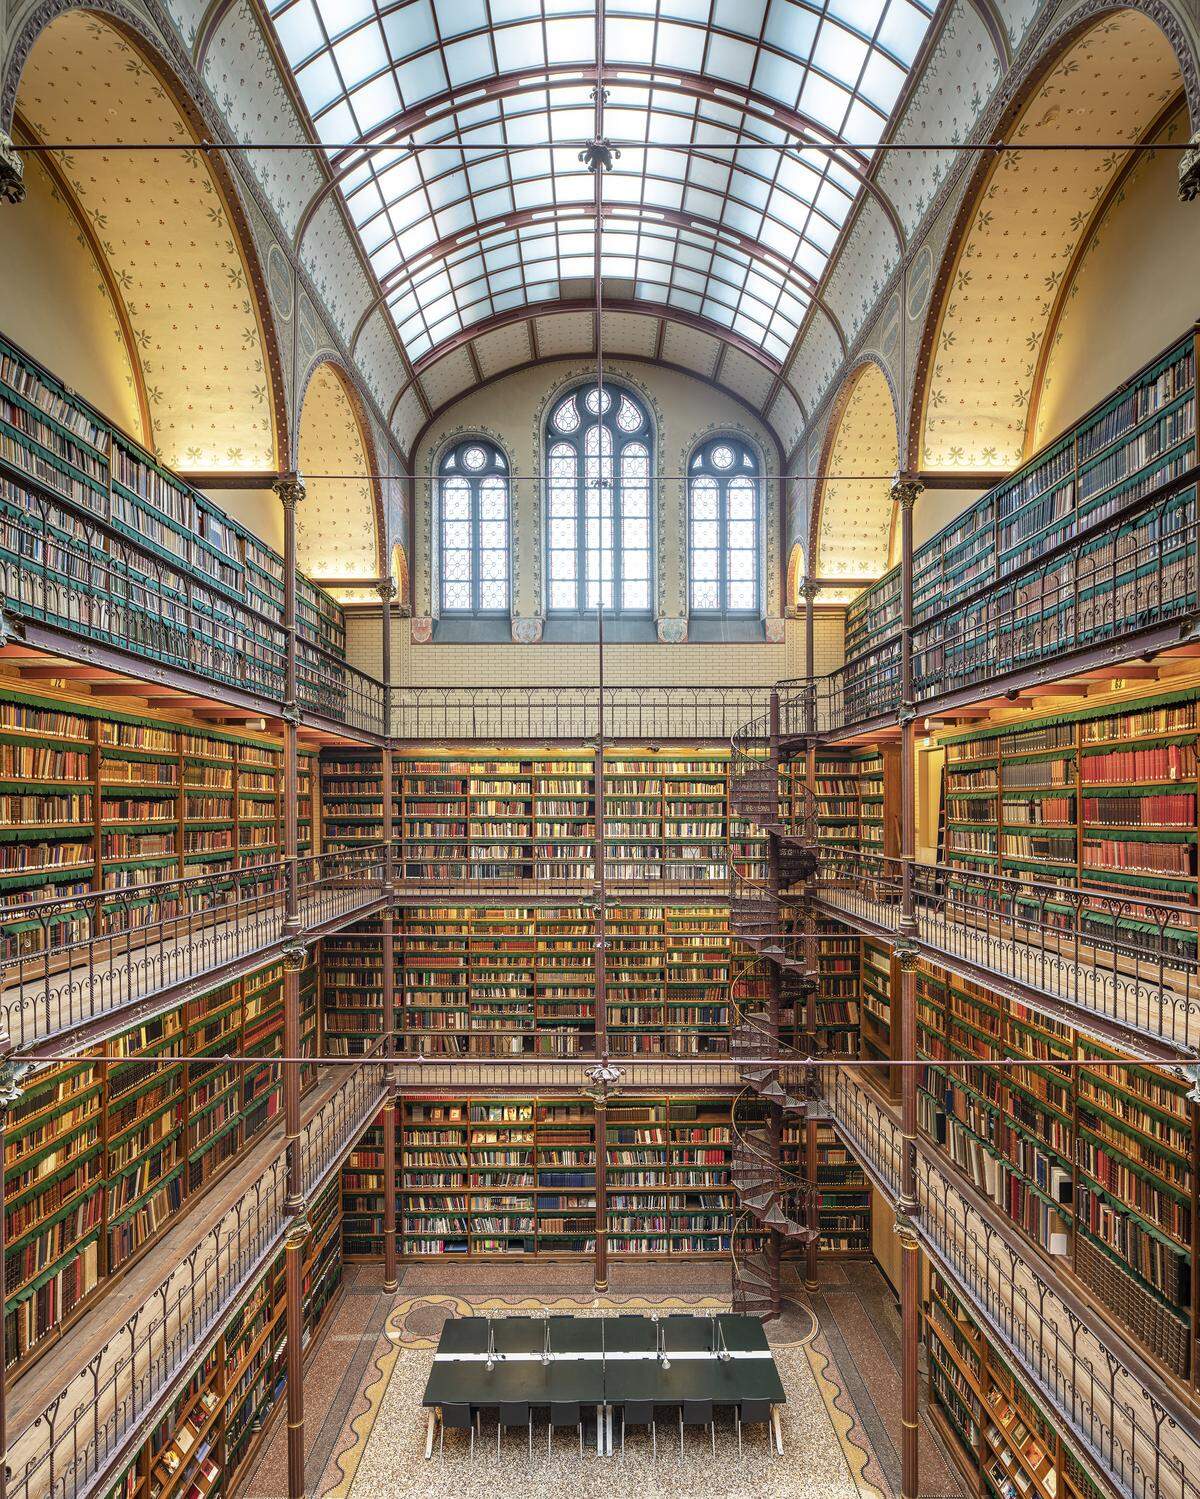 "Das Wort 'Bibliothek' stammt aus dem Griechischen und bezeichnete ein "Buch-Behältnis". Heute sind diese Kathedralen des Wissens weit mehr als nur Büchersammlungen", heißt es im Verlagstext.